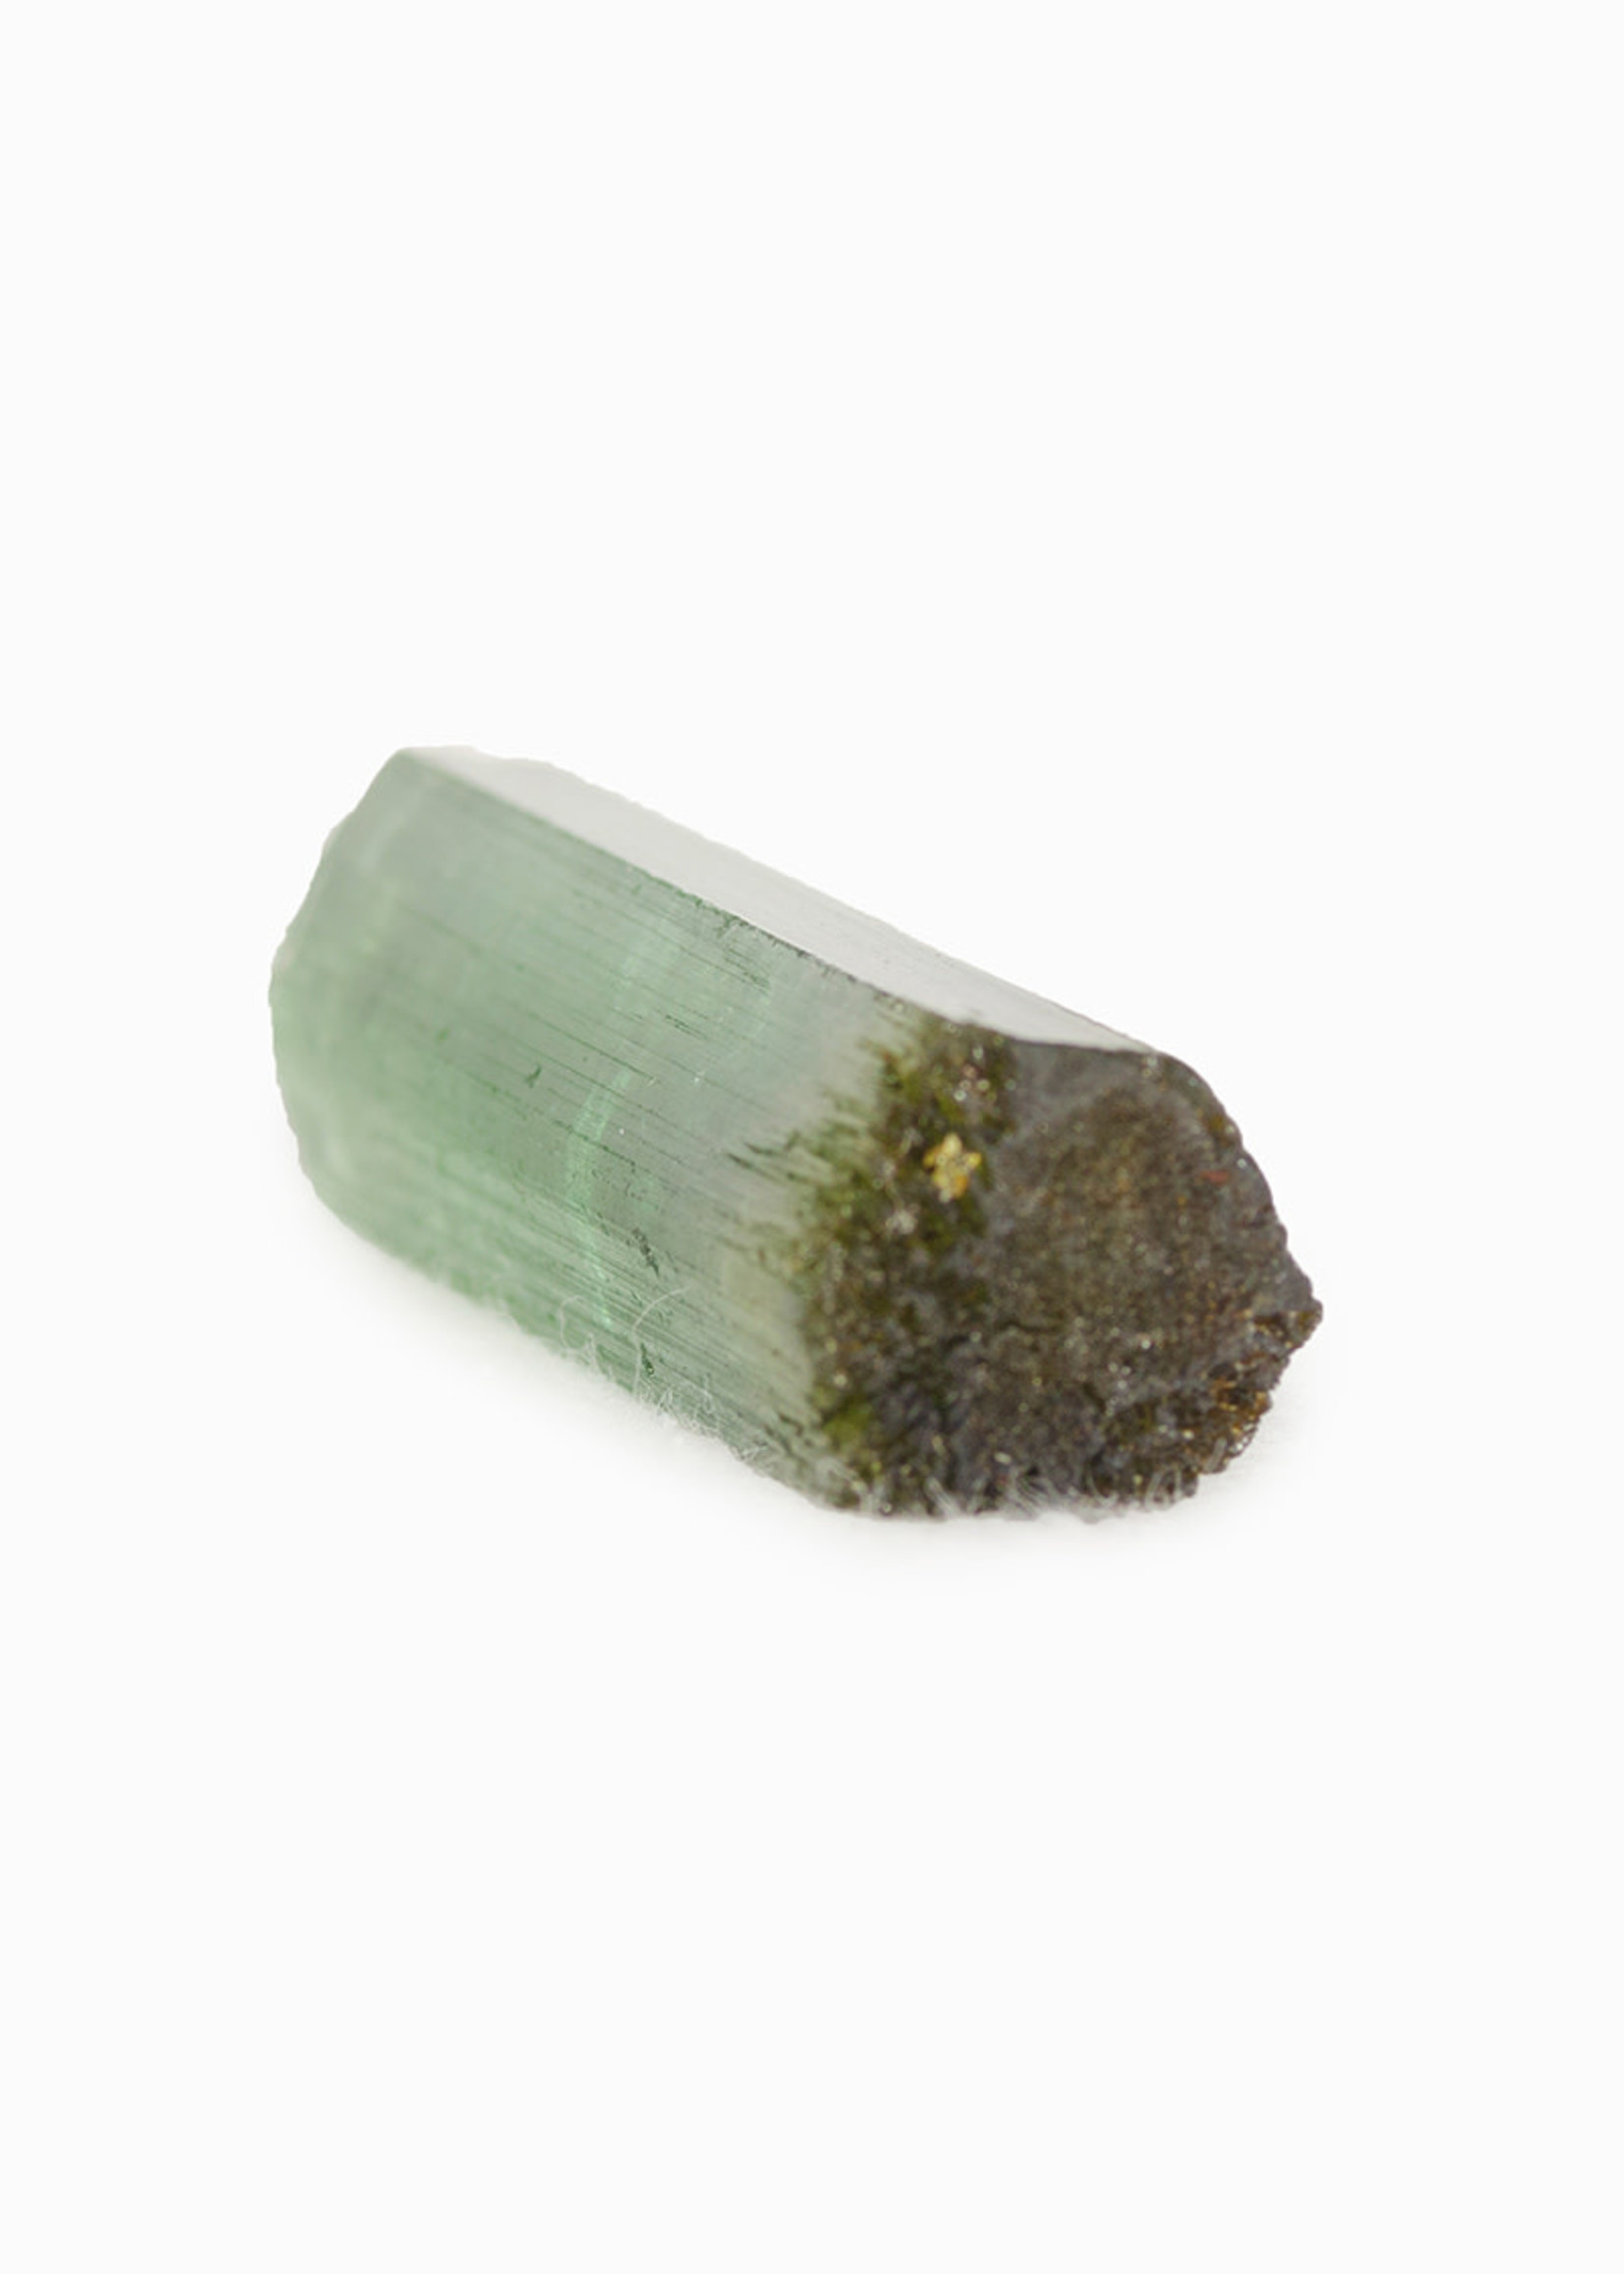 Minerals & Mystics Green Tourmaline Crystal